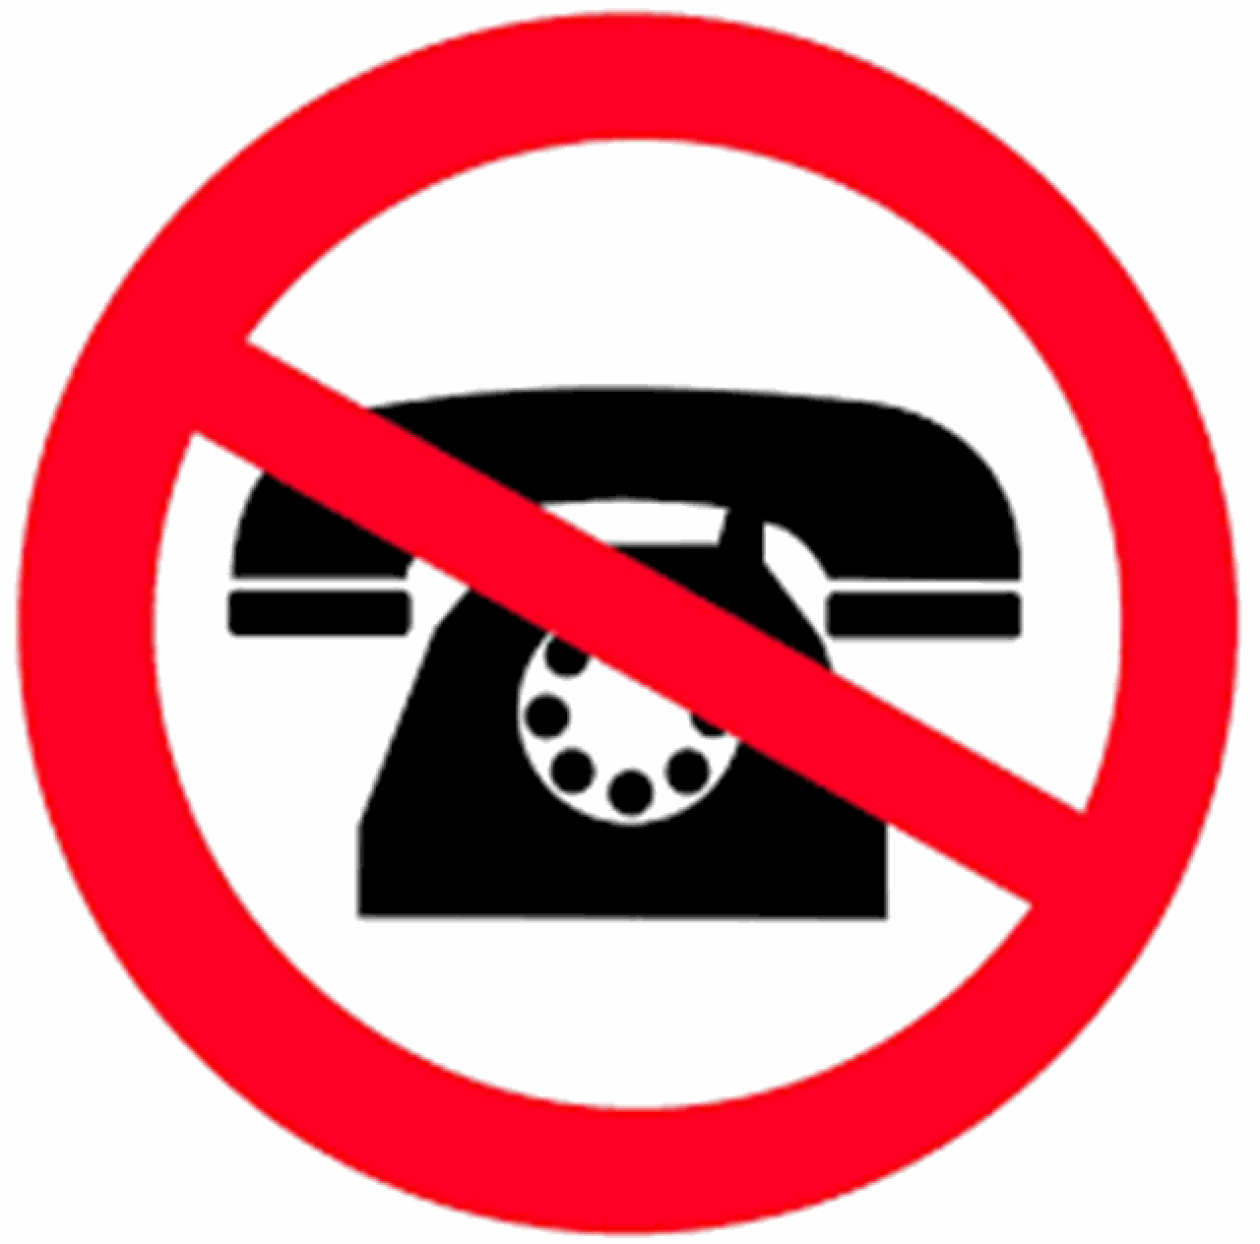 Telefoni Gradske uprave Čazma i dalje su u kvaru